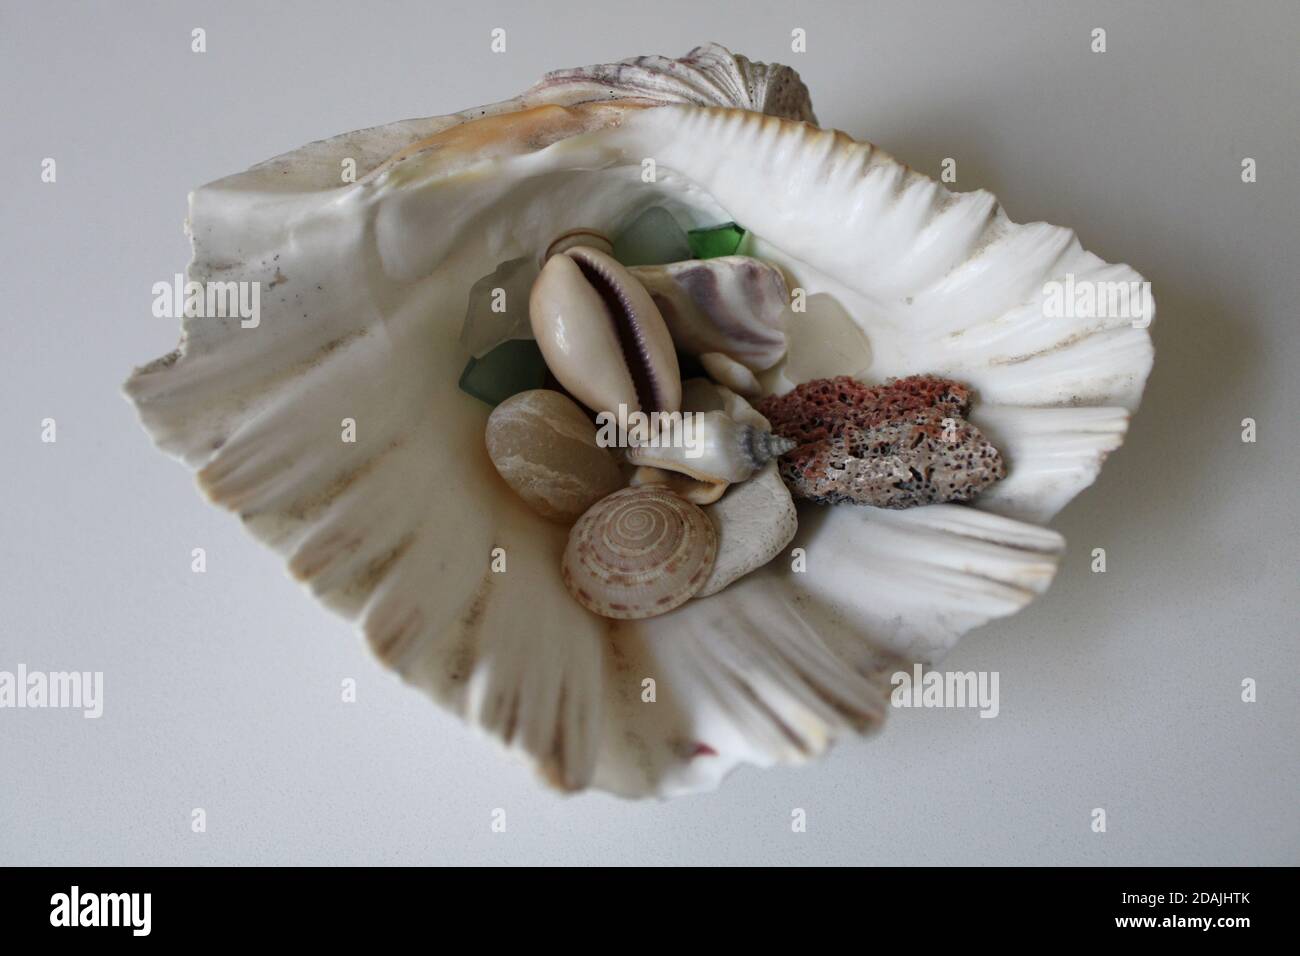 Cette demi-coquille contient une petite collection de coquillages, de verre de mer, et d'autres articles trouvés pendant le peignage de plage. Banque D'Images